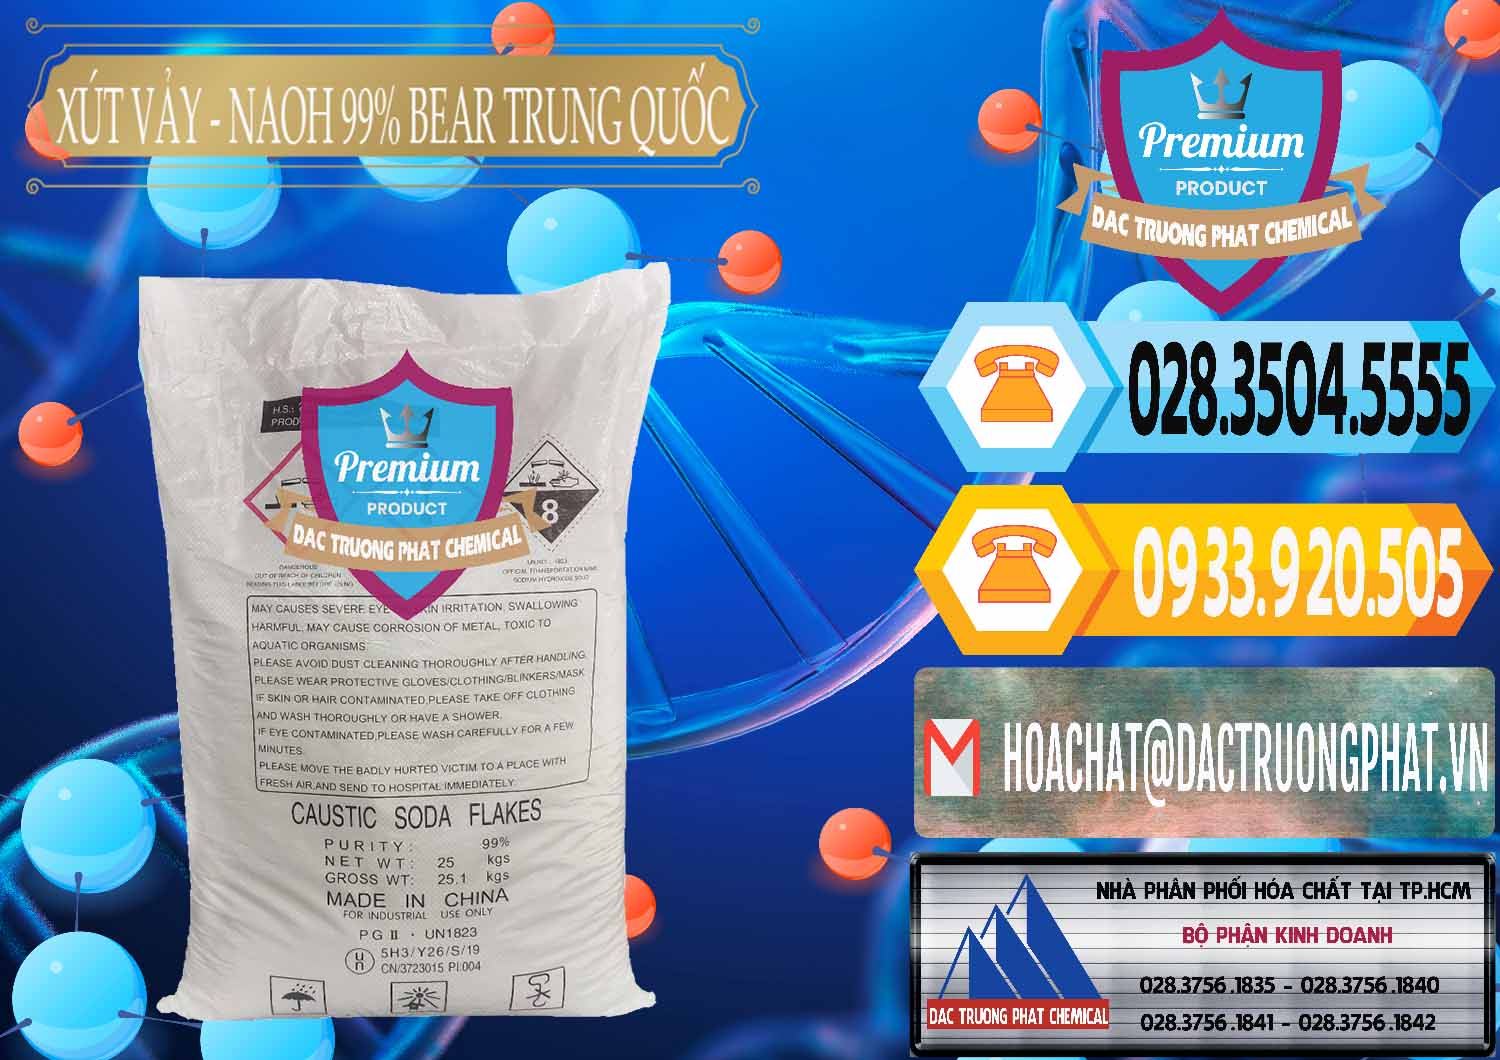 Đơn vị bán & cung cấp Xút Vảy - NaOH Vảy 99% Bear Sơn Đông Trung Quốc China - 0175 - Cty chuyên kinh doanh - phân phối hóa chất tại TP.HCM - hoachattayrua.net